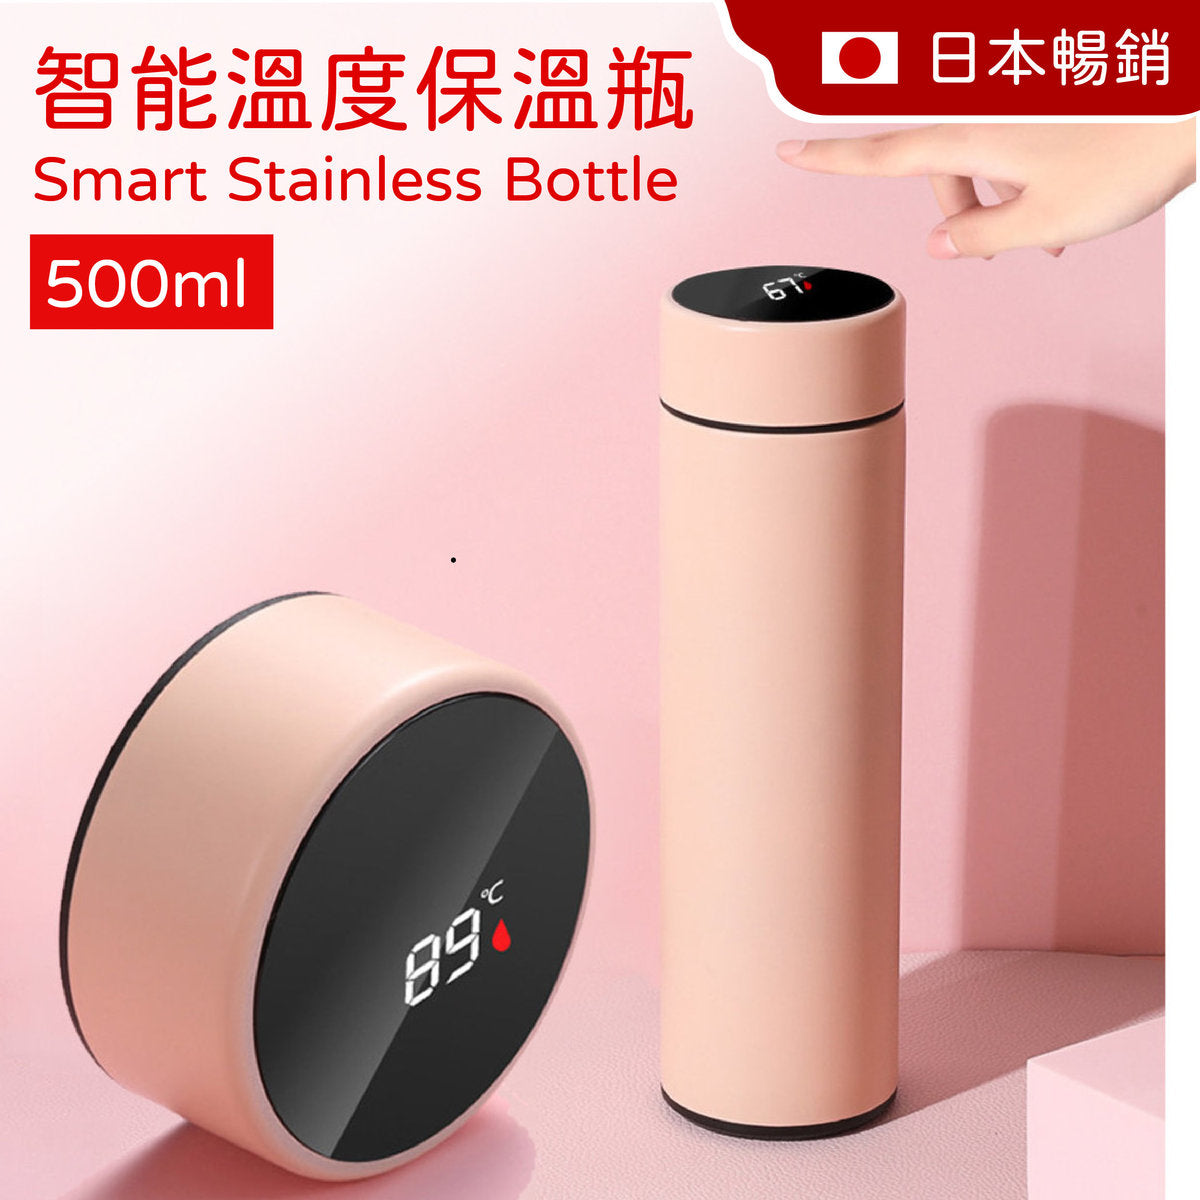 (粉紅色）500ml 智能溫度顯示真空保溫瓶 智能 水瓶 不銹鋼 保溫杯 咖啡杯 旅行杯 車用 便携 溫度顯示 真空保溫杯 保溫杯 瓶